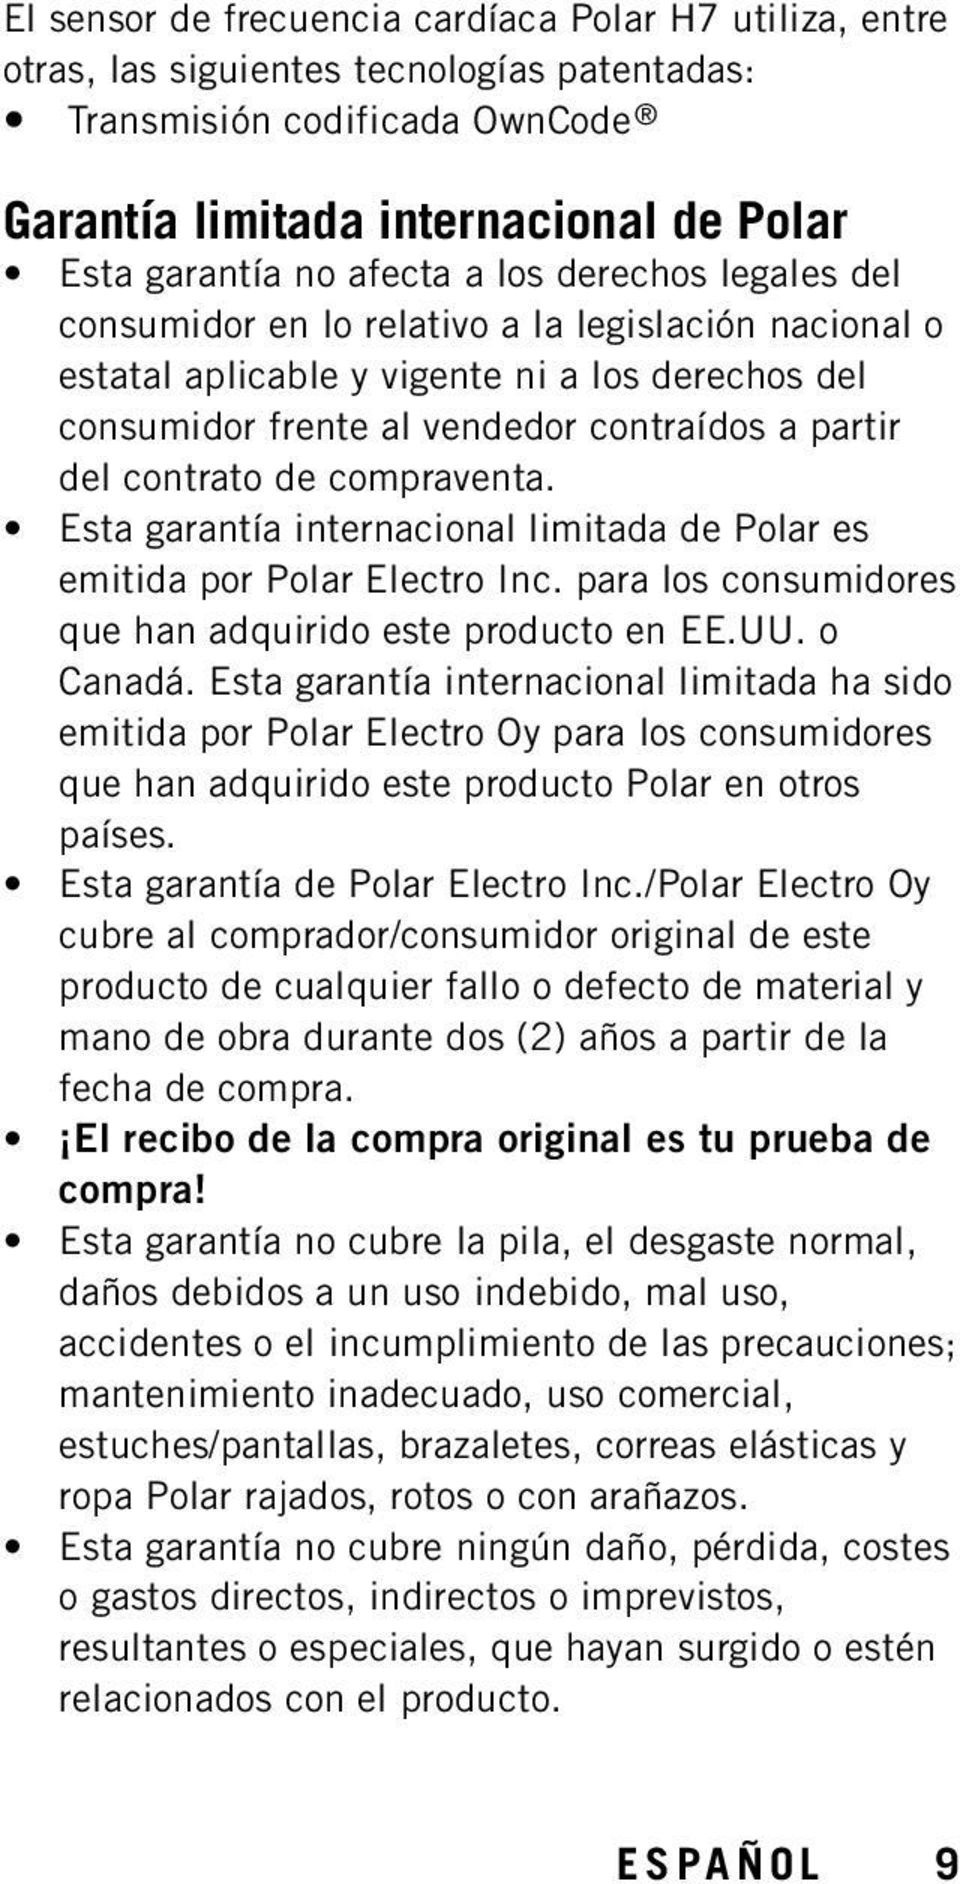 compraventa. Esta garantía internacional limitada de Polar es emitida por Polar Electro Inc. para los consumidores que han adquirido este producto en EE.UU. o Canadá.